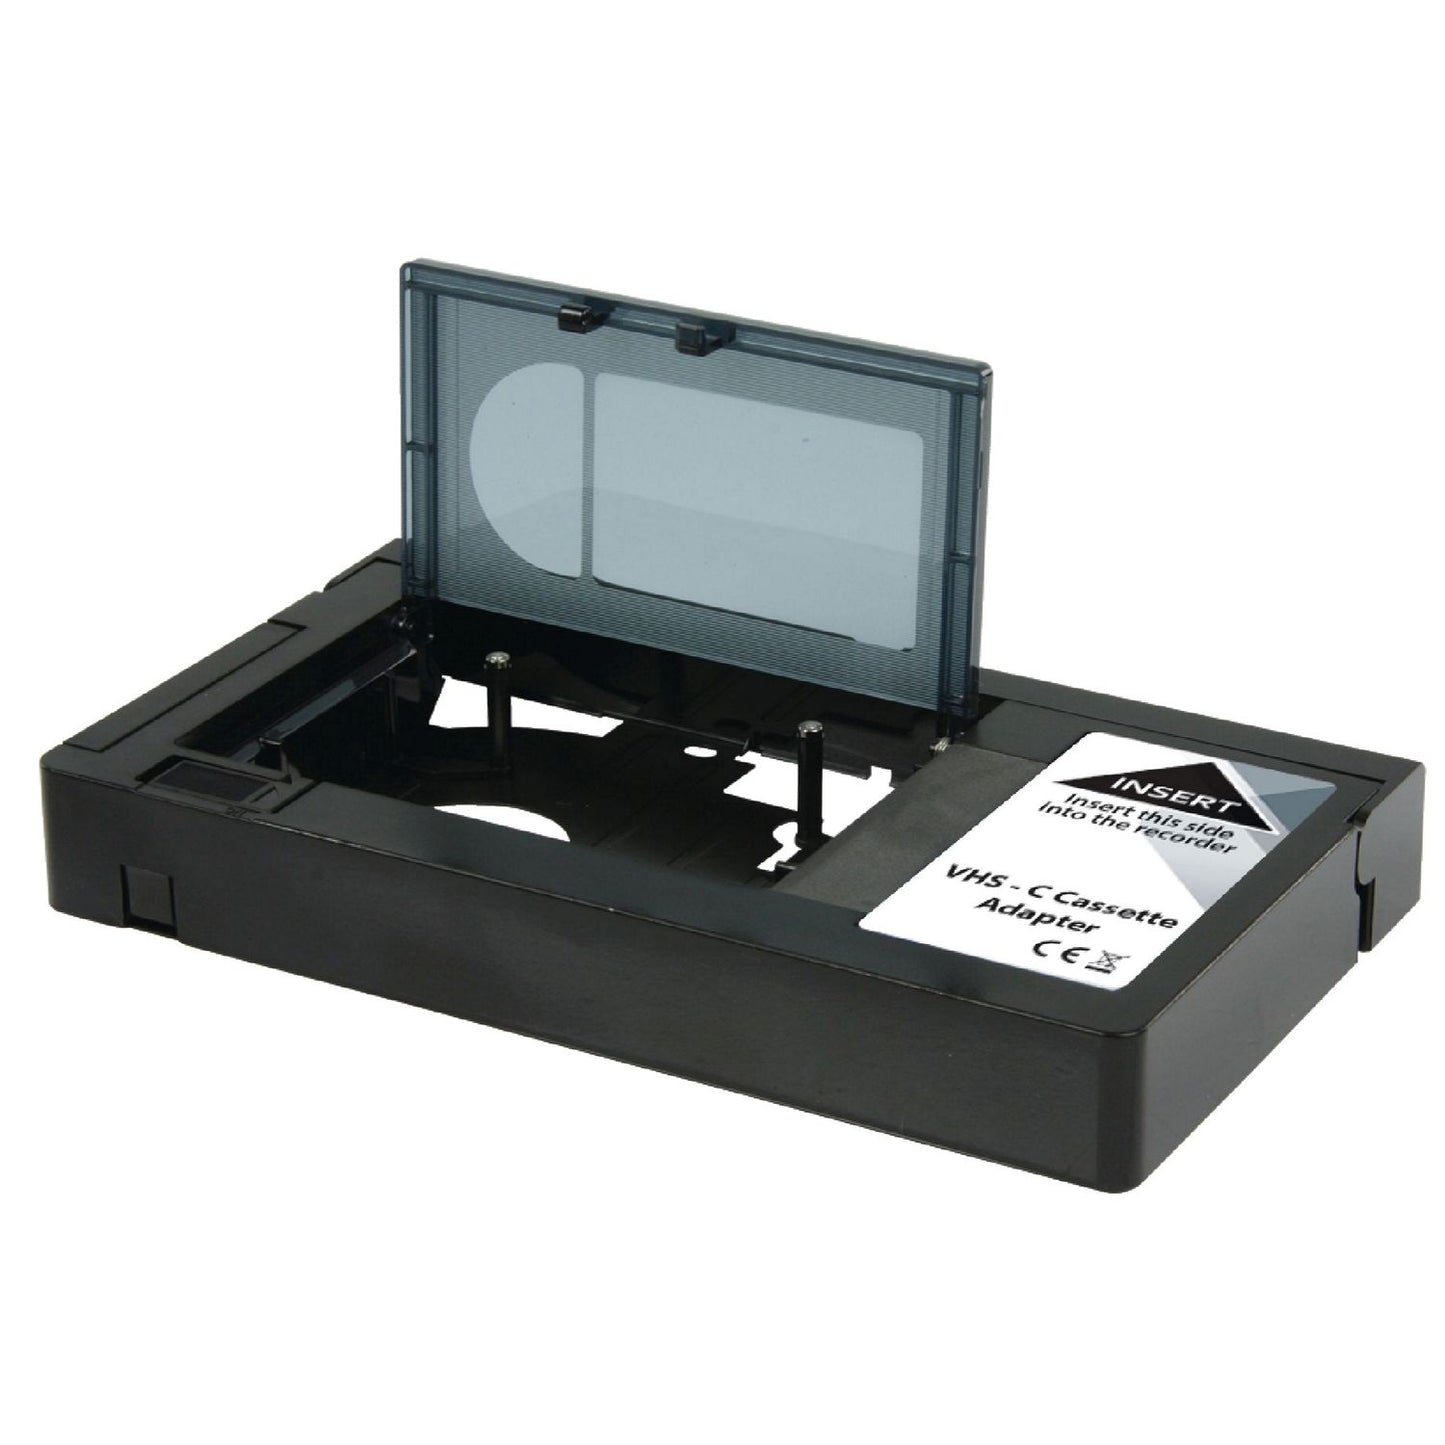 Konverter VHS-C - VHS Adapter zur Aufnahme und Wiedergabe